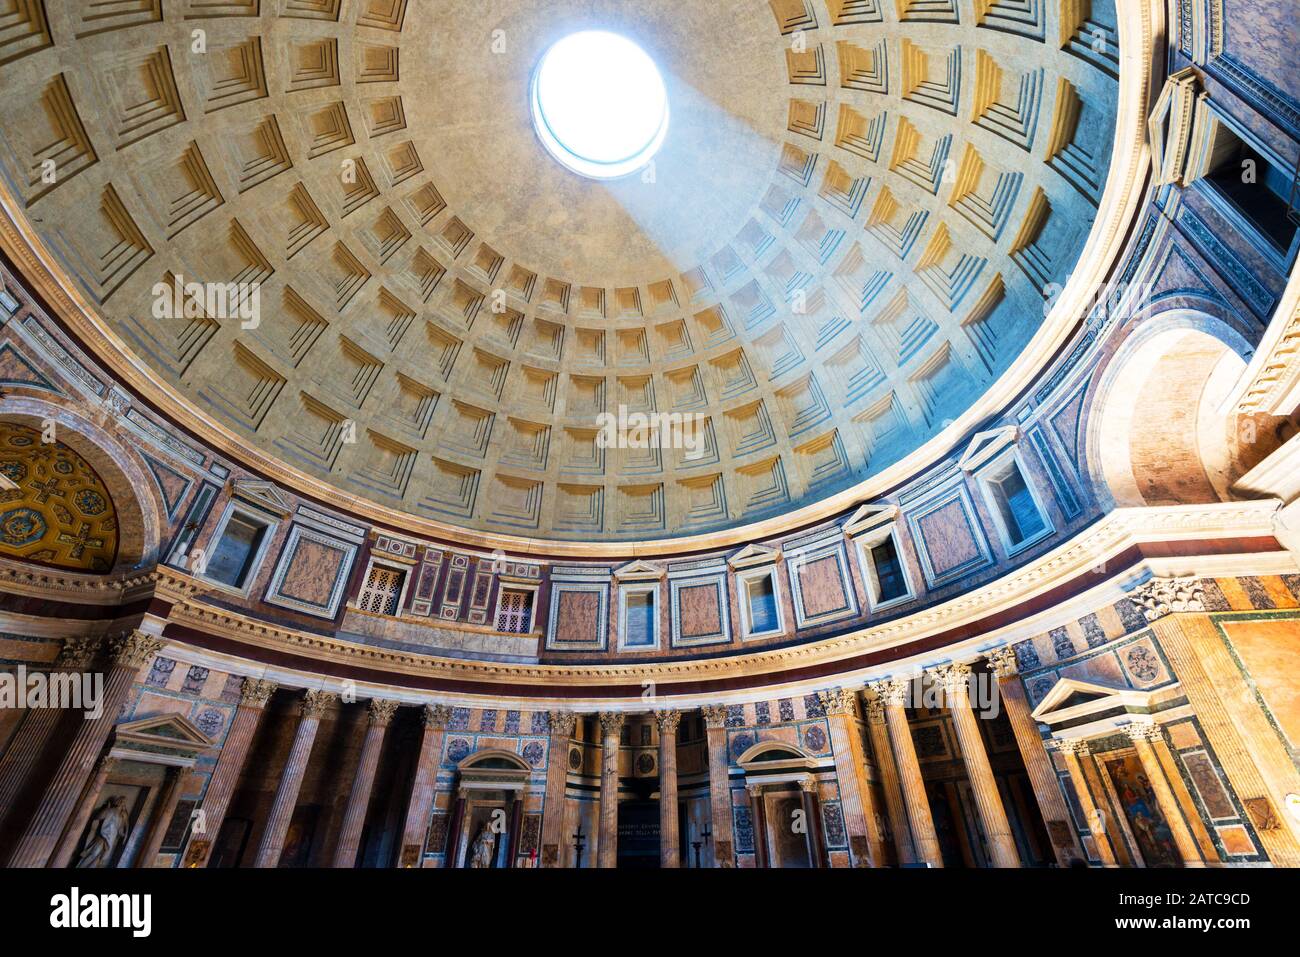 Interno del Pantheon con il famoso raggio di luce dall'alto, Roma, Italia Foto Stock